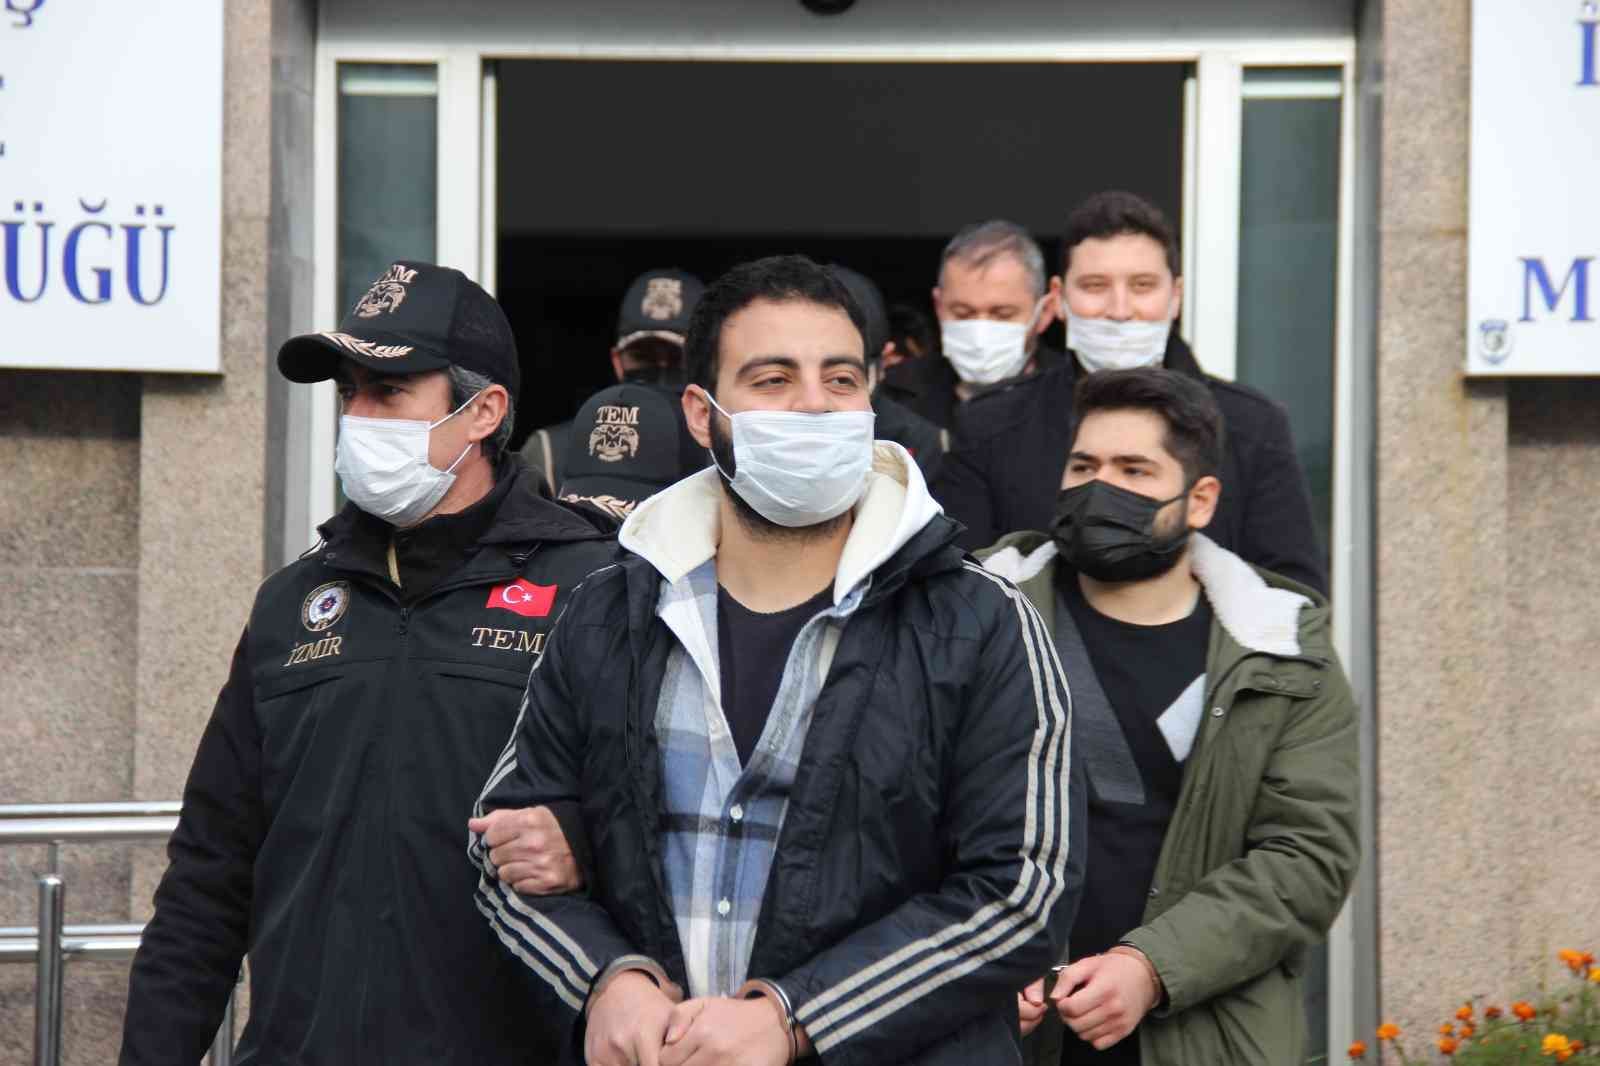 İzmir’deki FETÖ operasyonunda, eyalet kasası suçunu itiraf etti #izmir